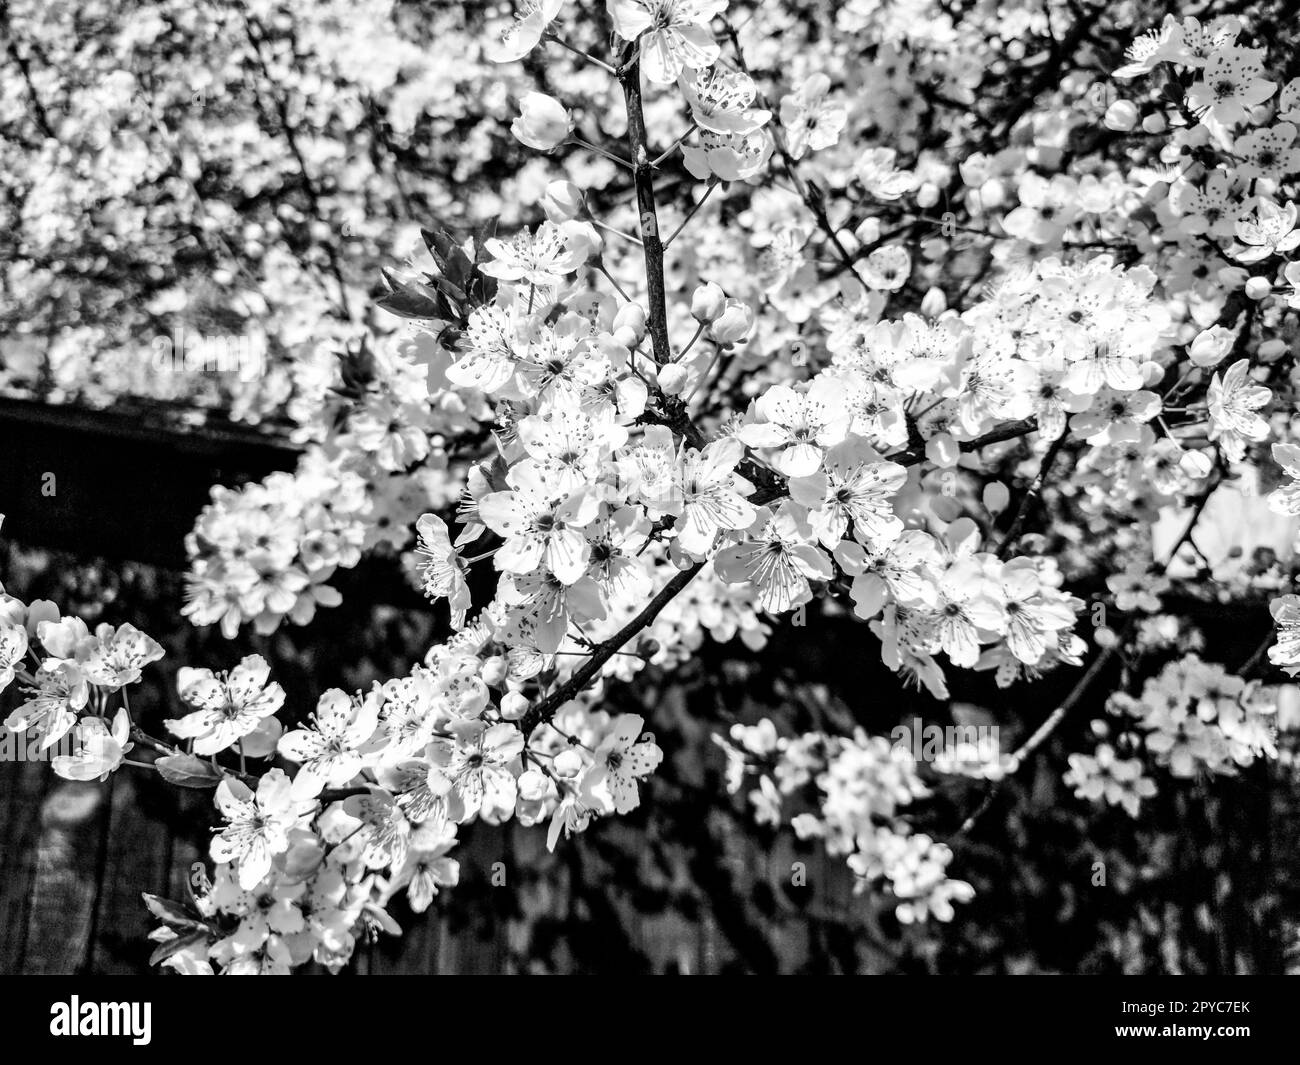 Bellissimi fiori primaverili bianchi. Ciliegie, albicocche e prugne in fiore. Festival di primavera. Tradizione giapponese. Biglietto d'auguri, layout o sfondo floreale. Petali delicati con pestelli e steli Foto Stock